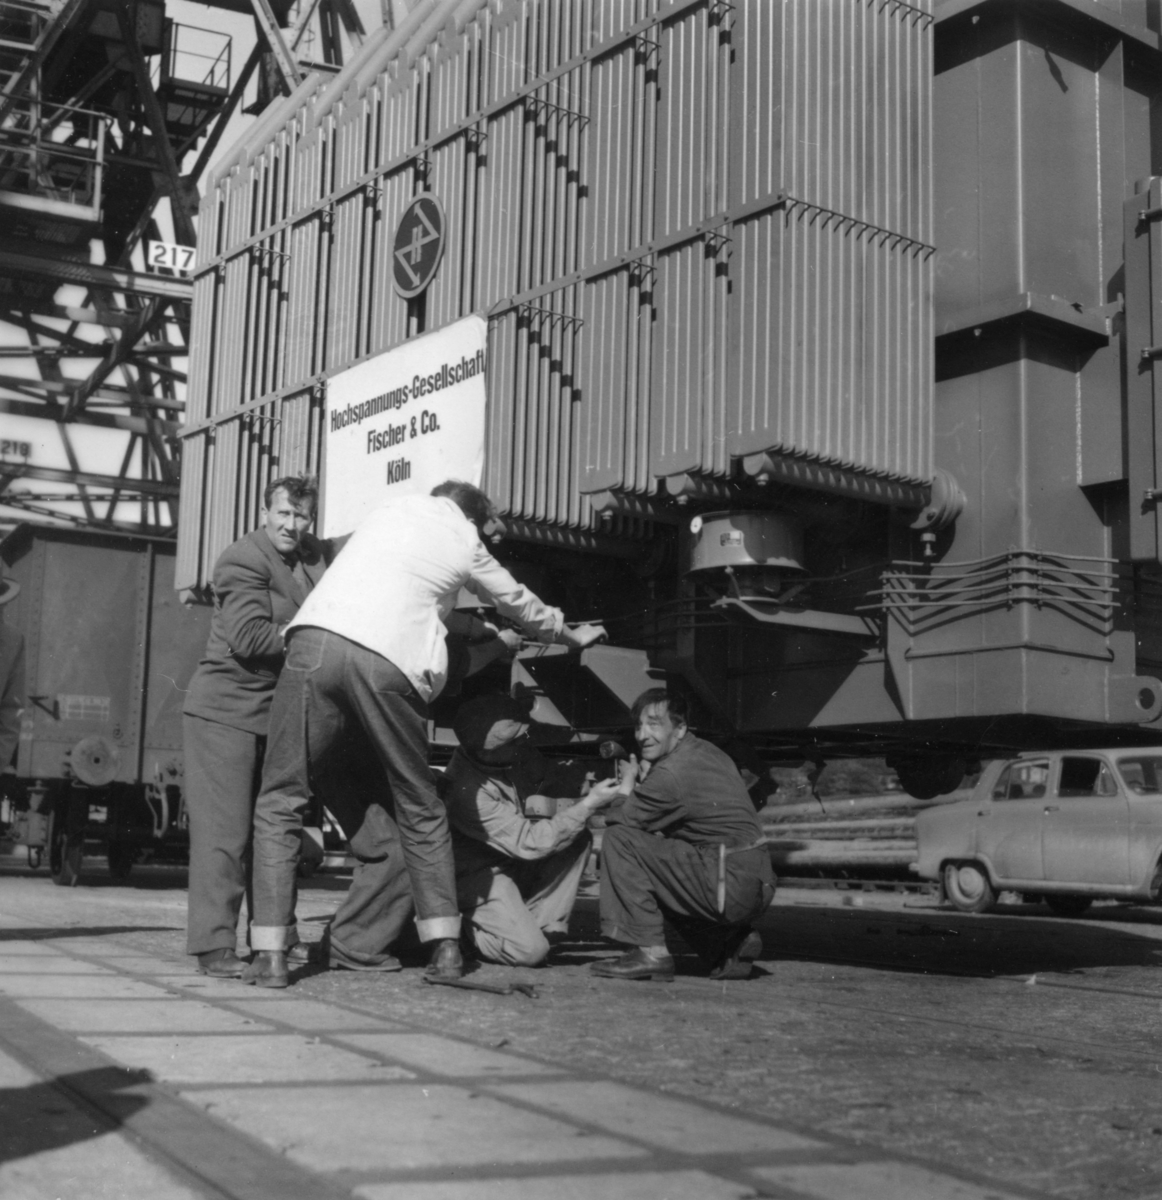 Transport av transformator 50 kW, Inför omlastning i Göteborgs hamn 17/6-1955. Några män är med på bilden.